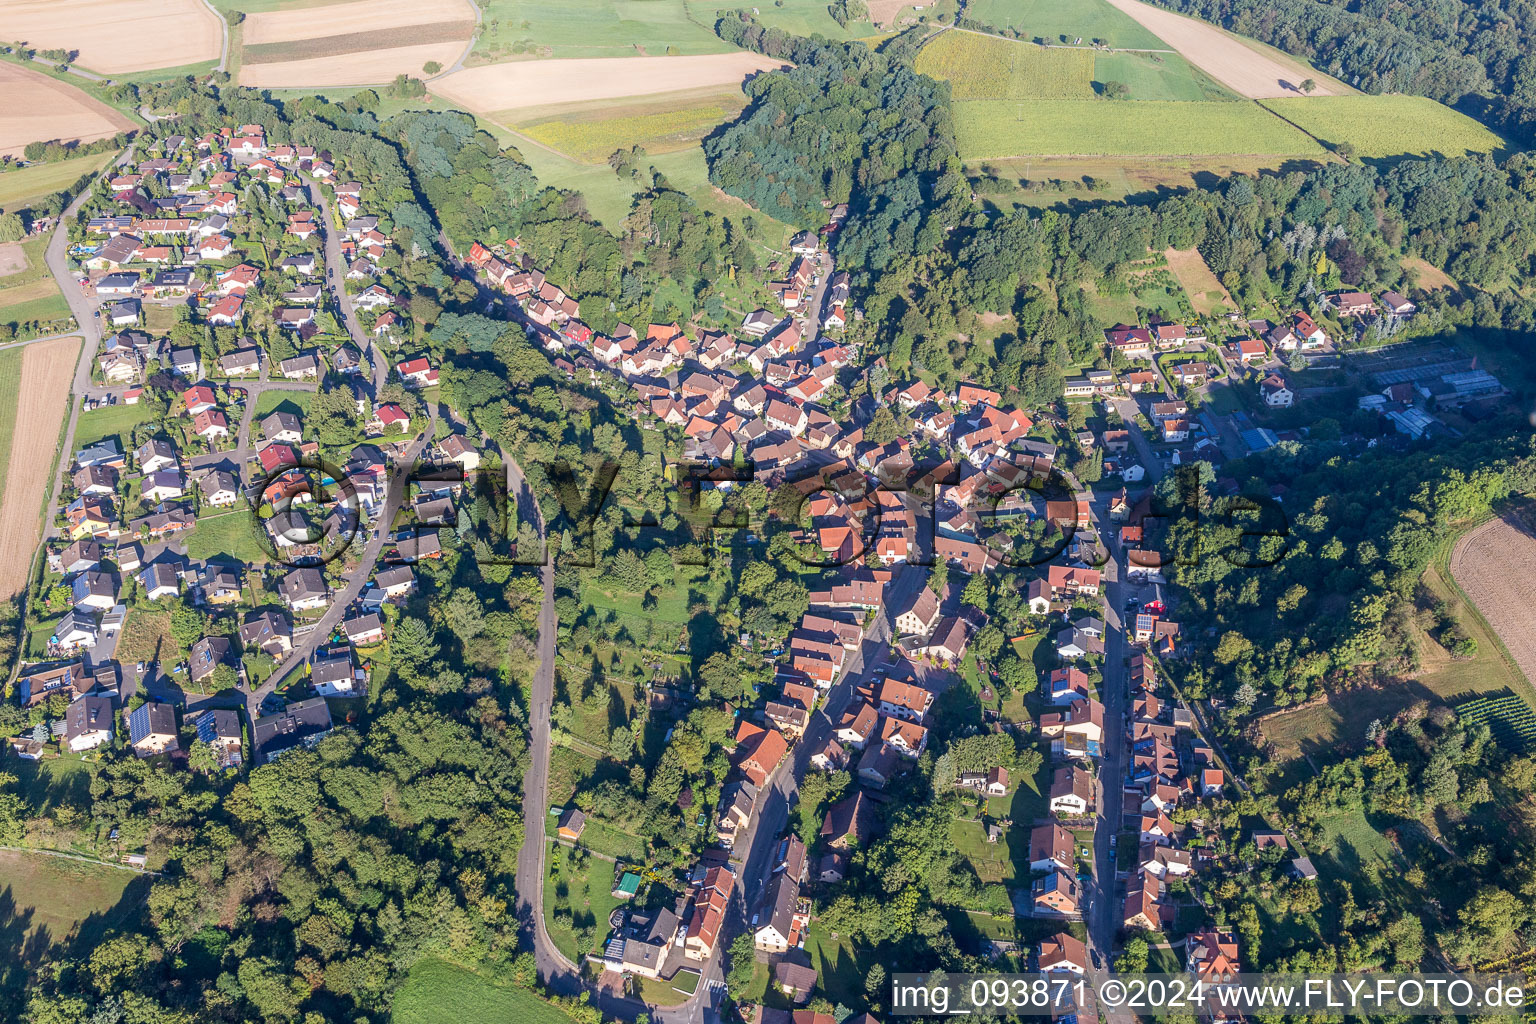 Vue aérienne de Champs agricoles et surfaces utilisables à Zaberfeld dans le département Bade-Wurtemberg, Allemagne